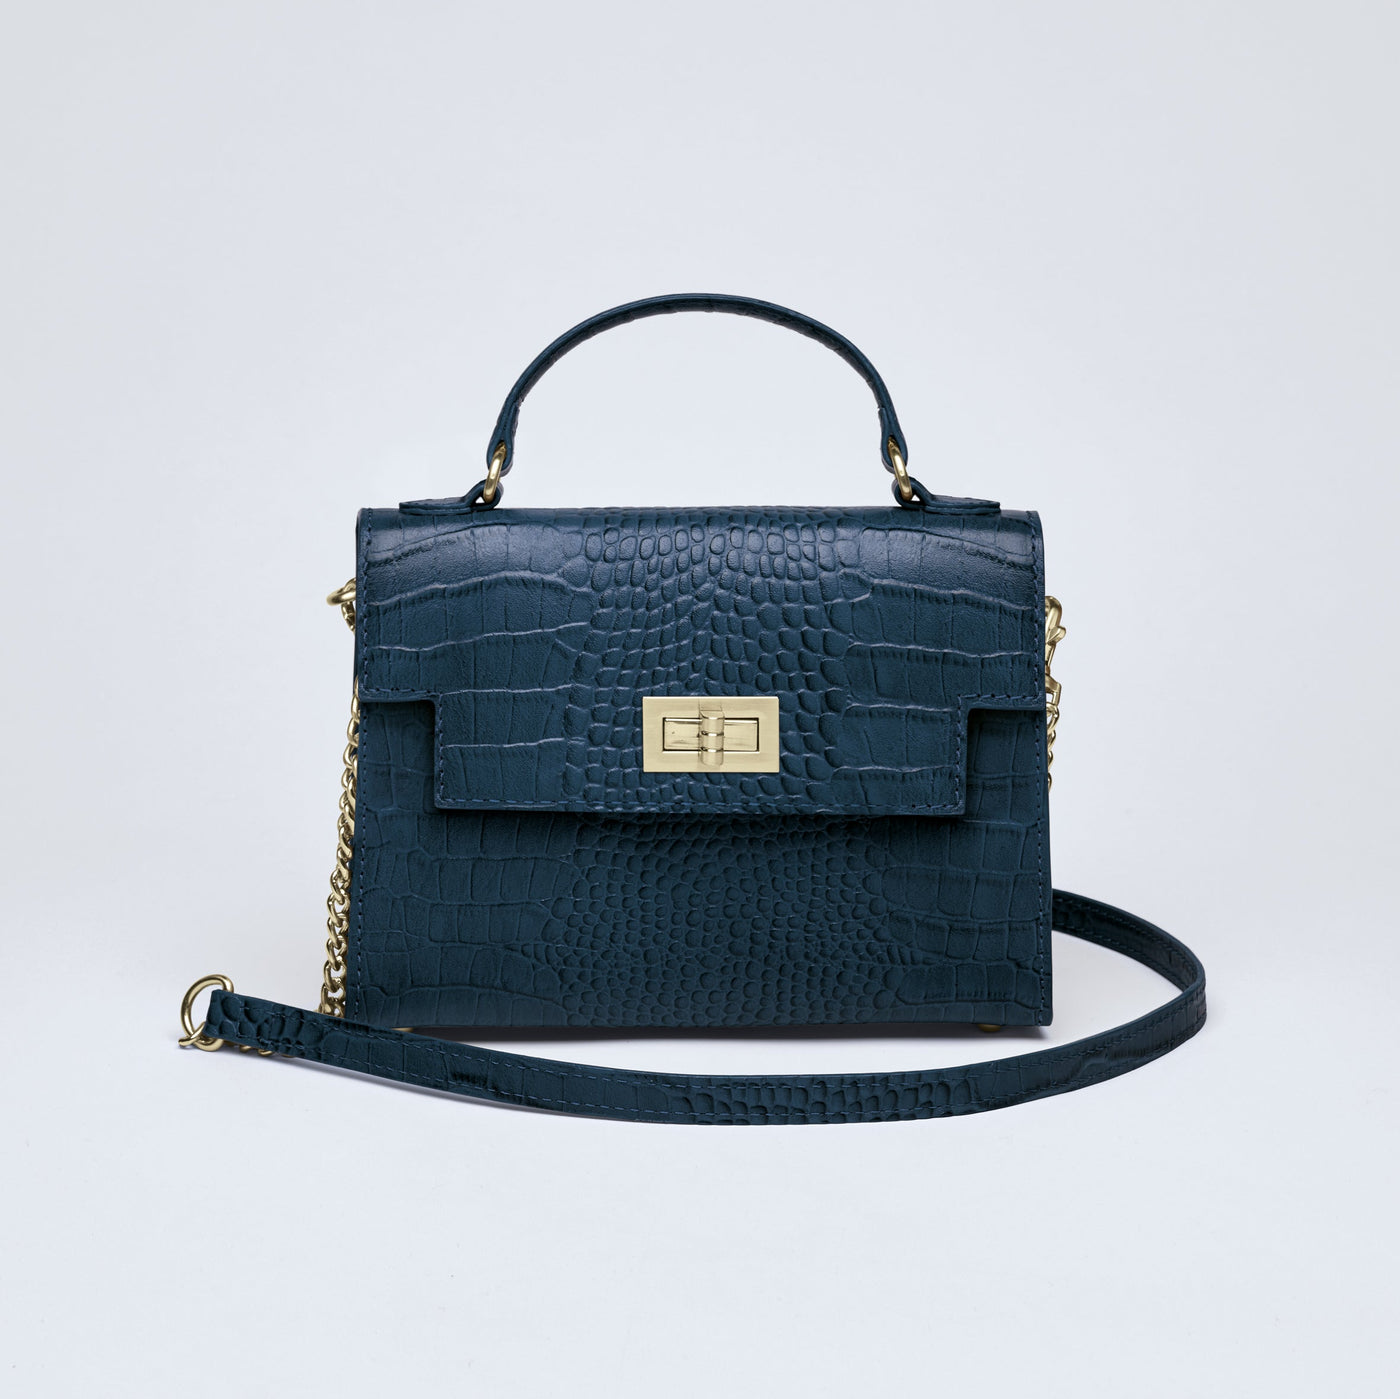 Croco leather handbag Monceau